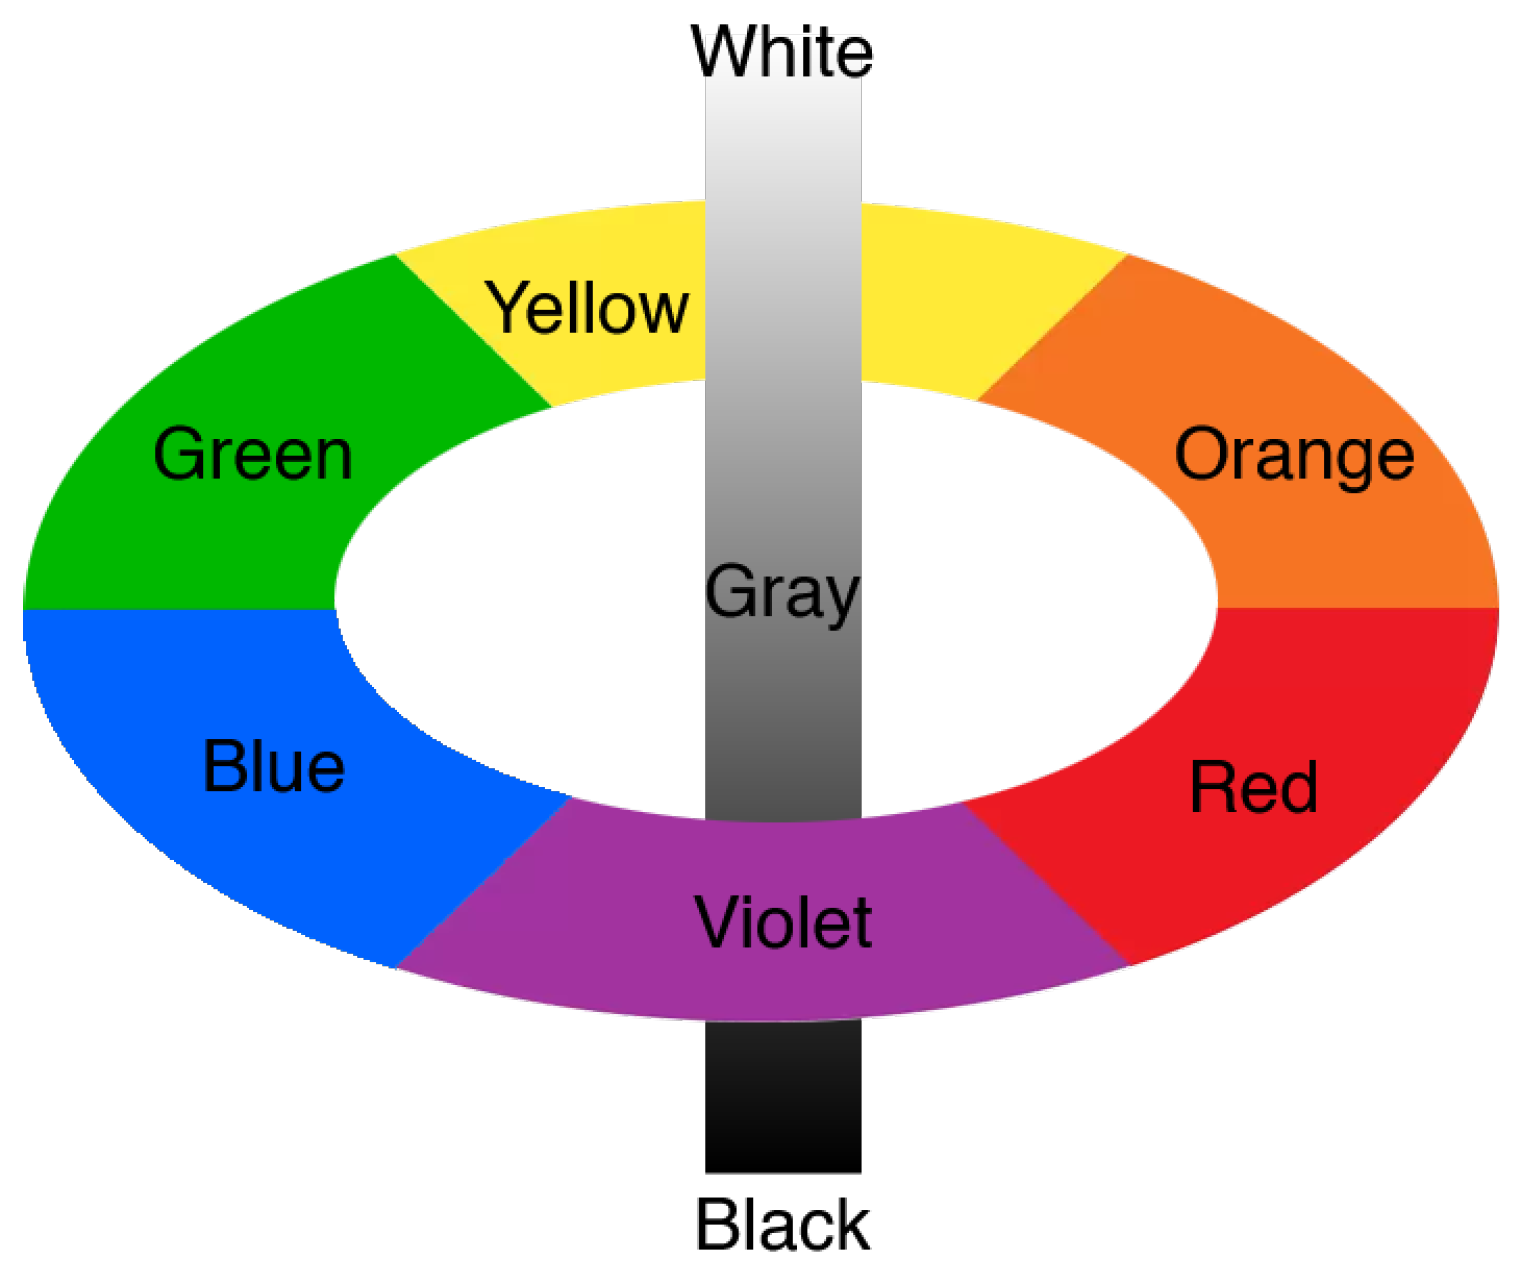 Màu nền là yếu tố quan trọng trong thiết kế. Thừa phát lại còn thiếu, hãy xem hình ảnh liên quan để biết cách chọn màu nền phù hợp cho thiết kế của mình.